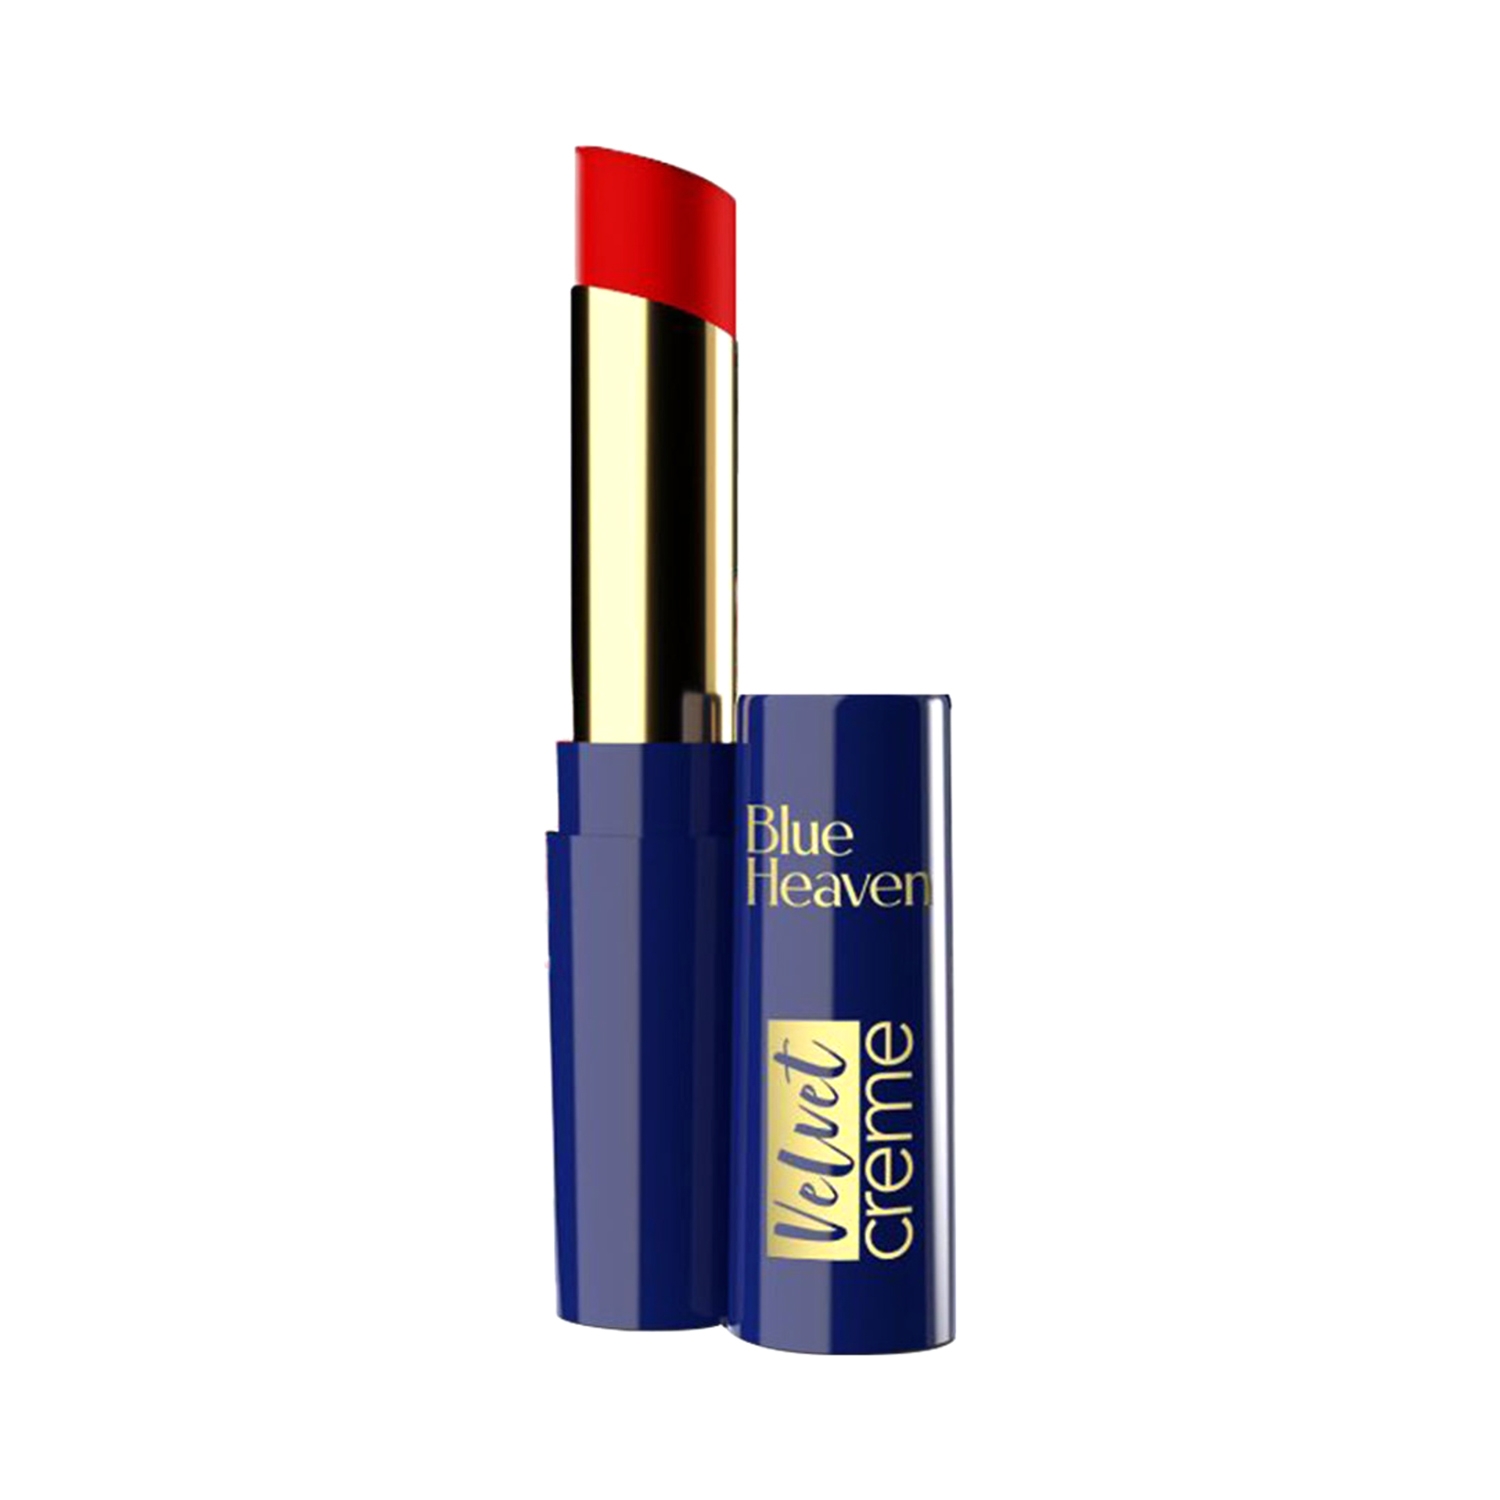 Blue Heaven Velvet Creme Lipstick - Dramatic Red (3.5g)